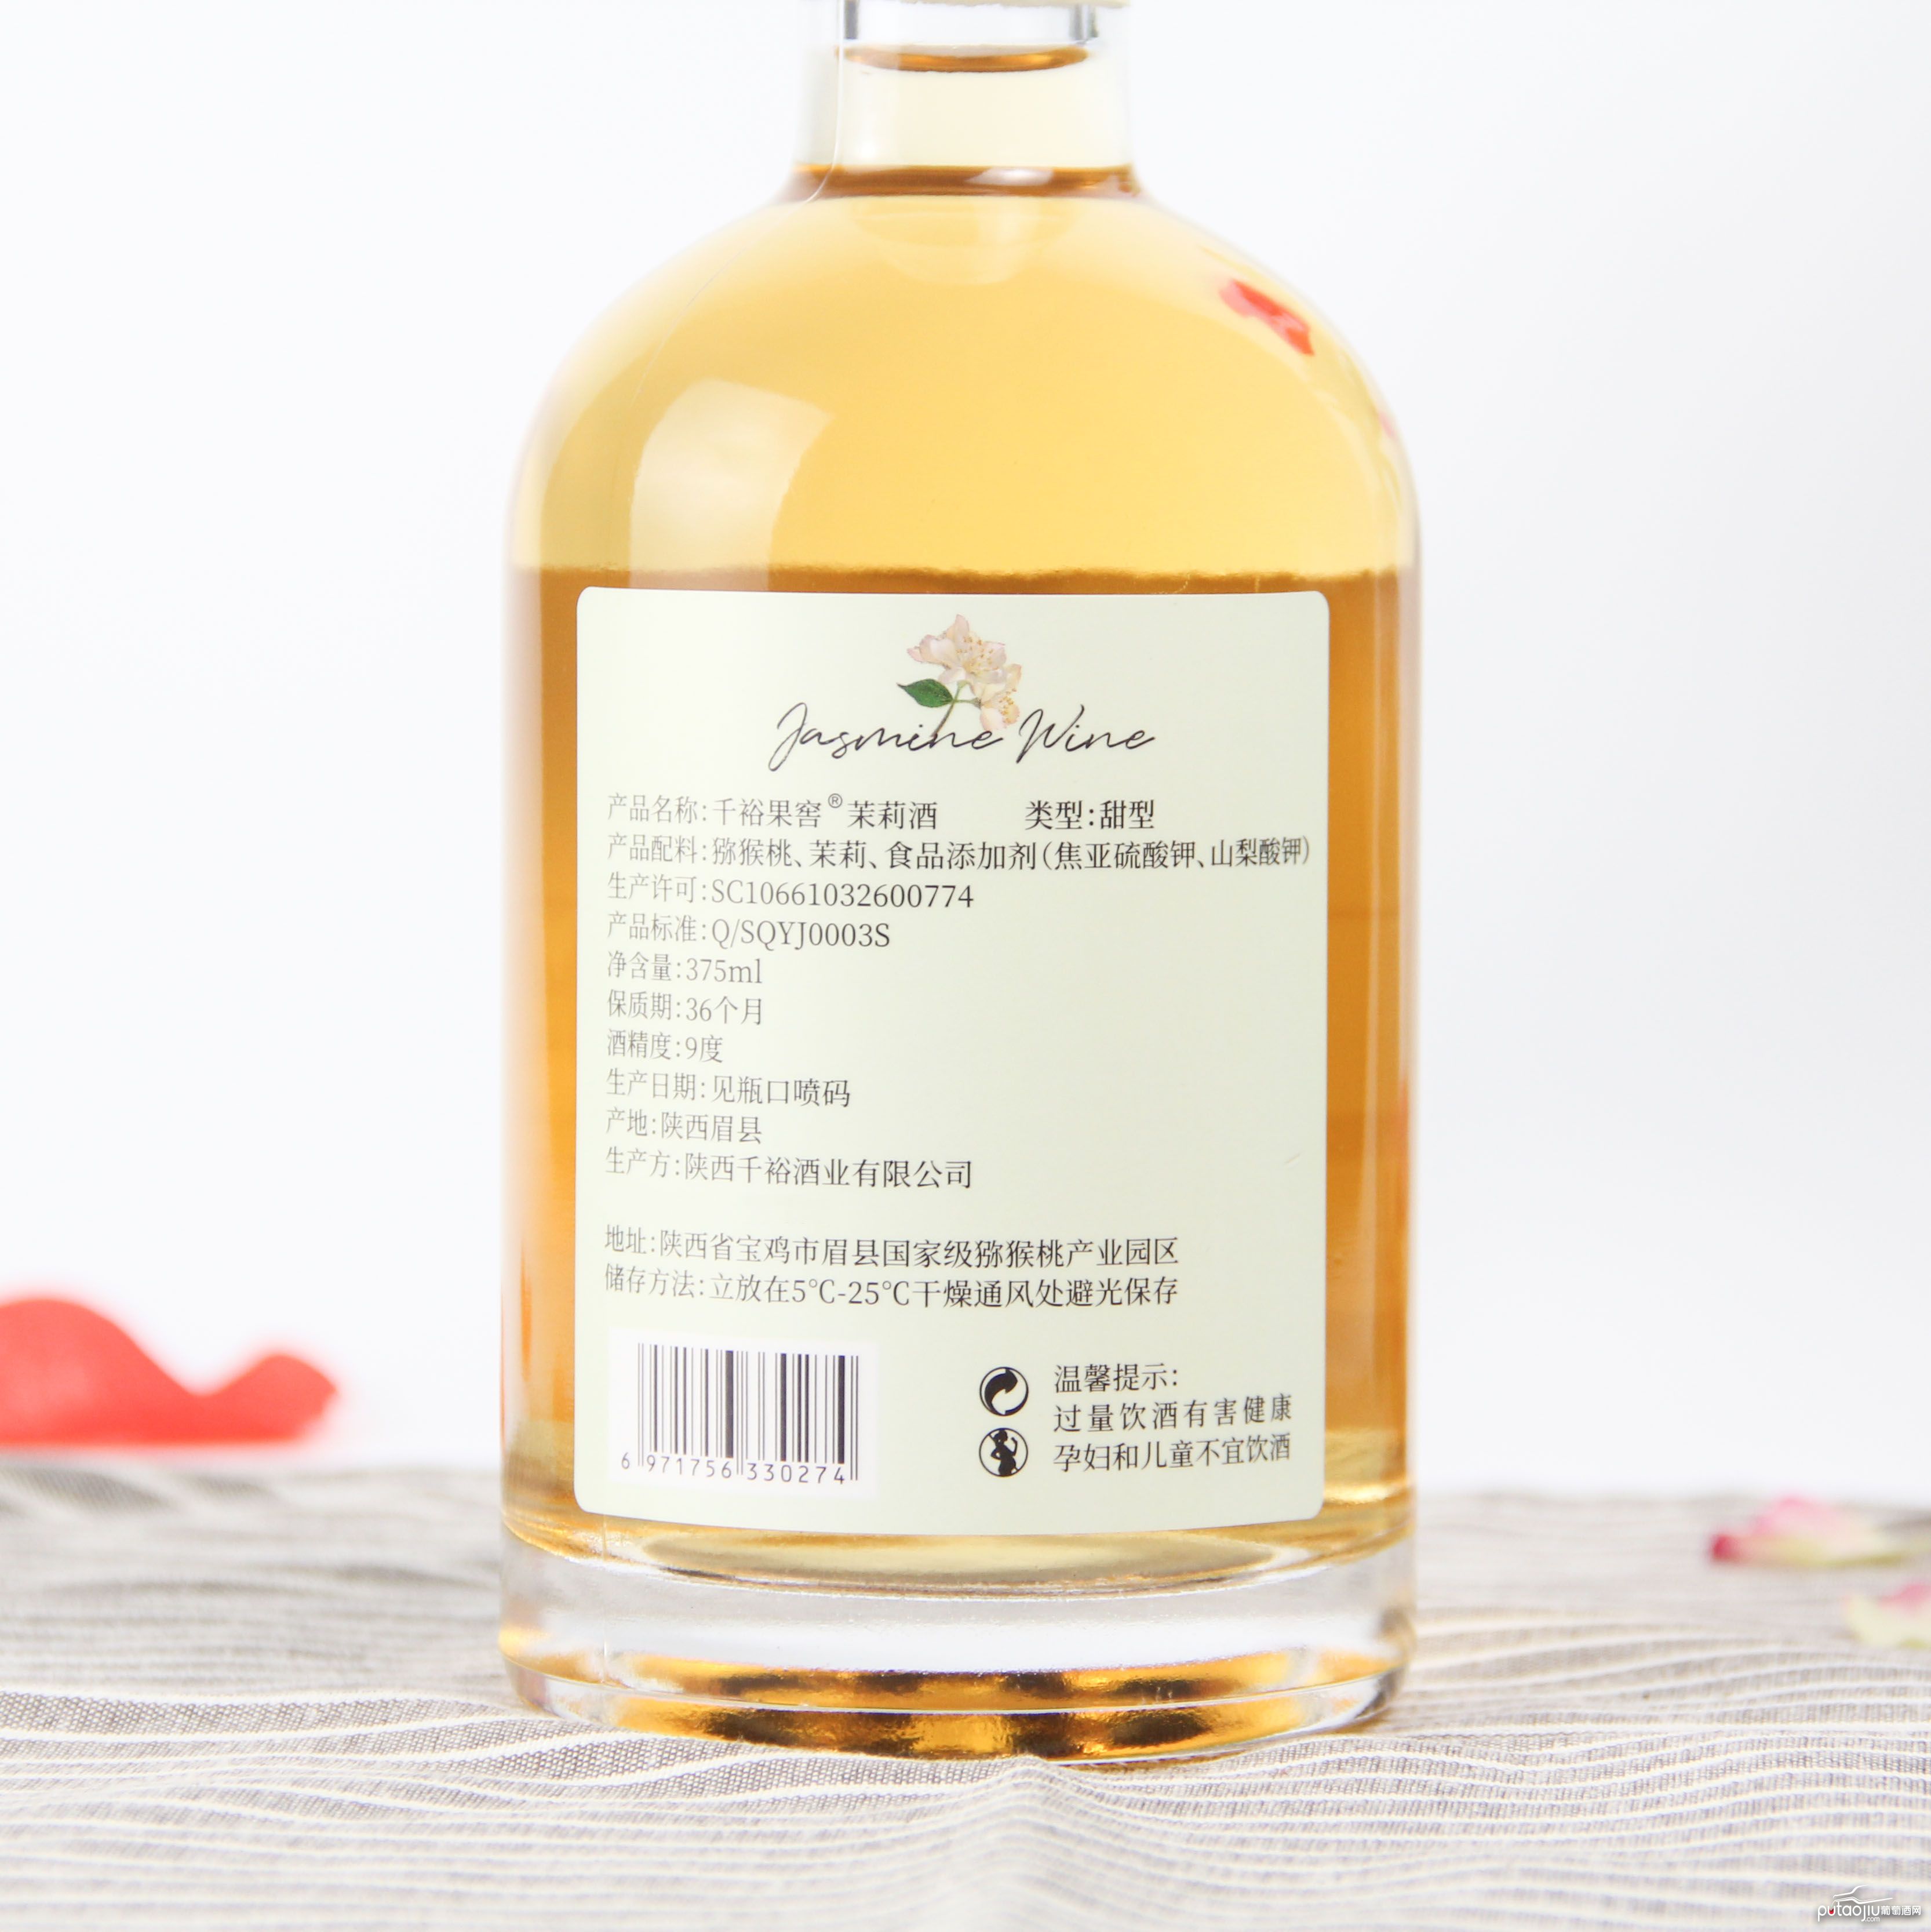 中国陕西产区千裕果窖茉莉酒